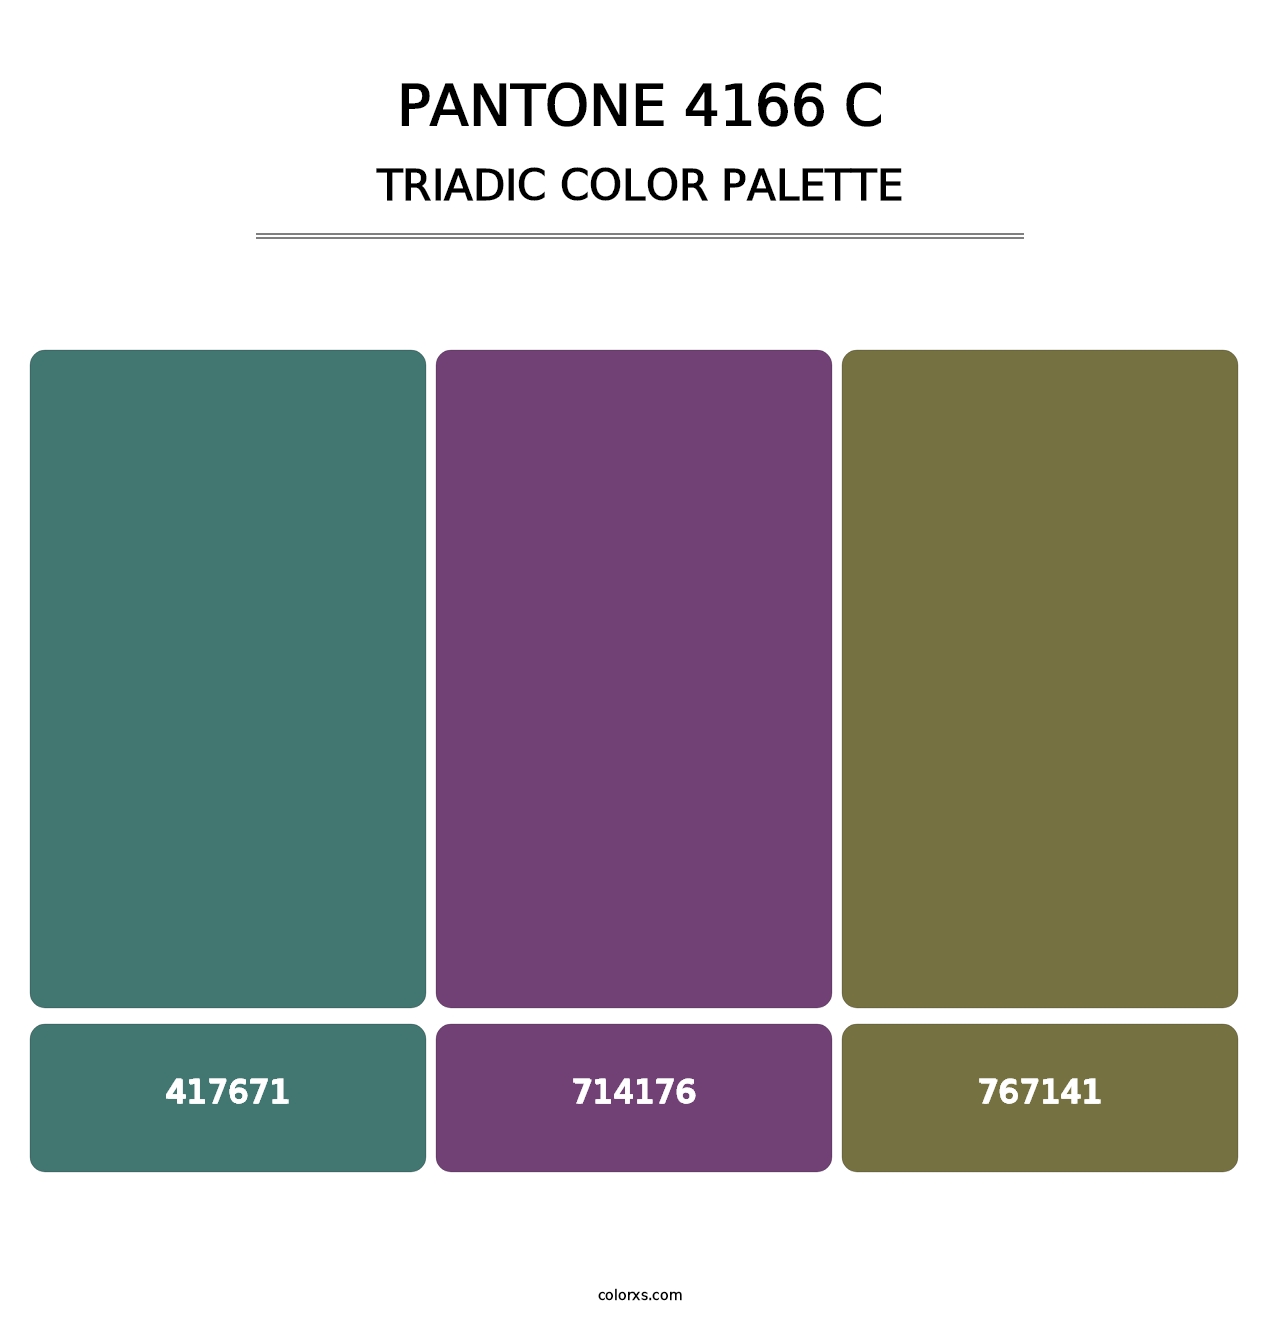 PANTONE 4166 C - Triadic Color Palette